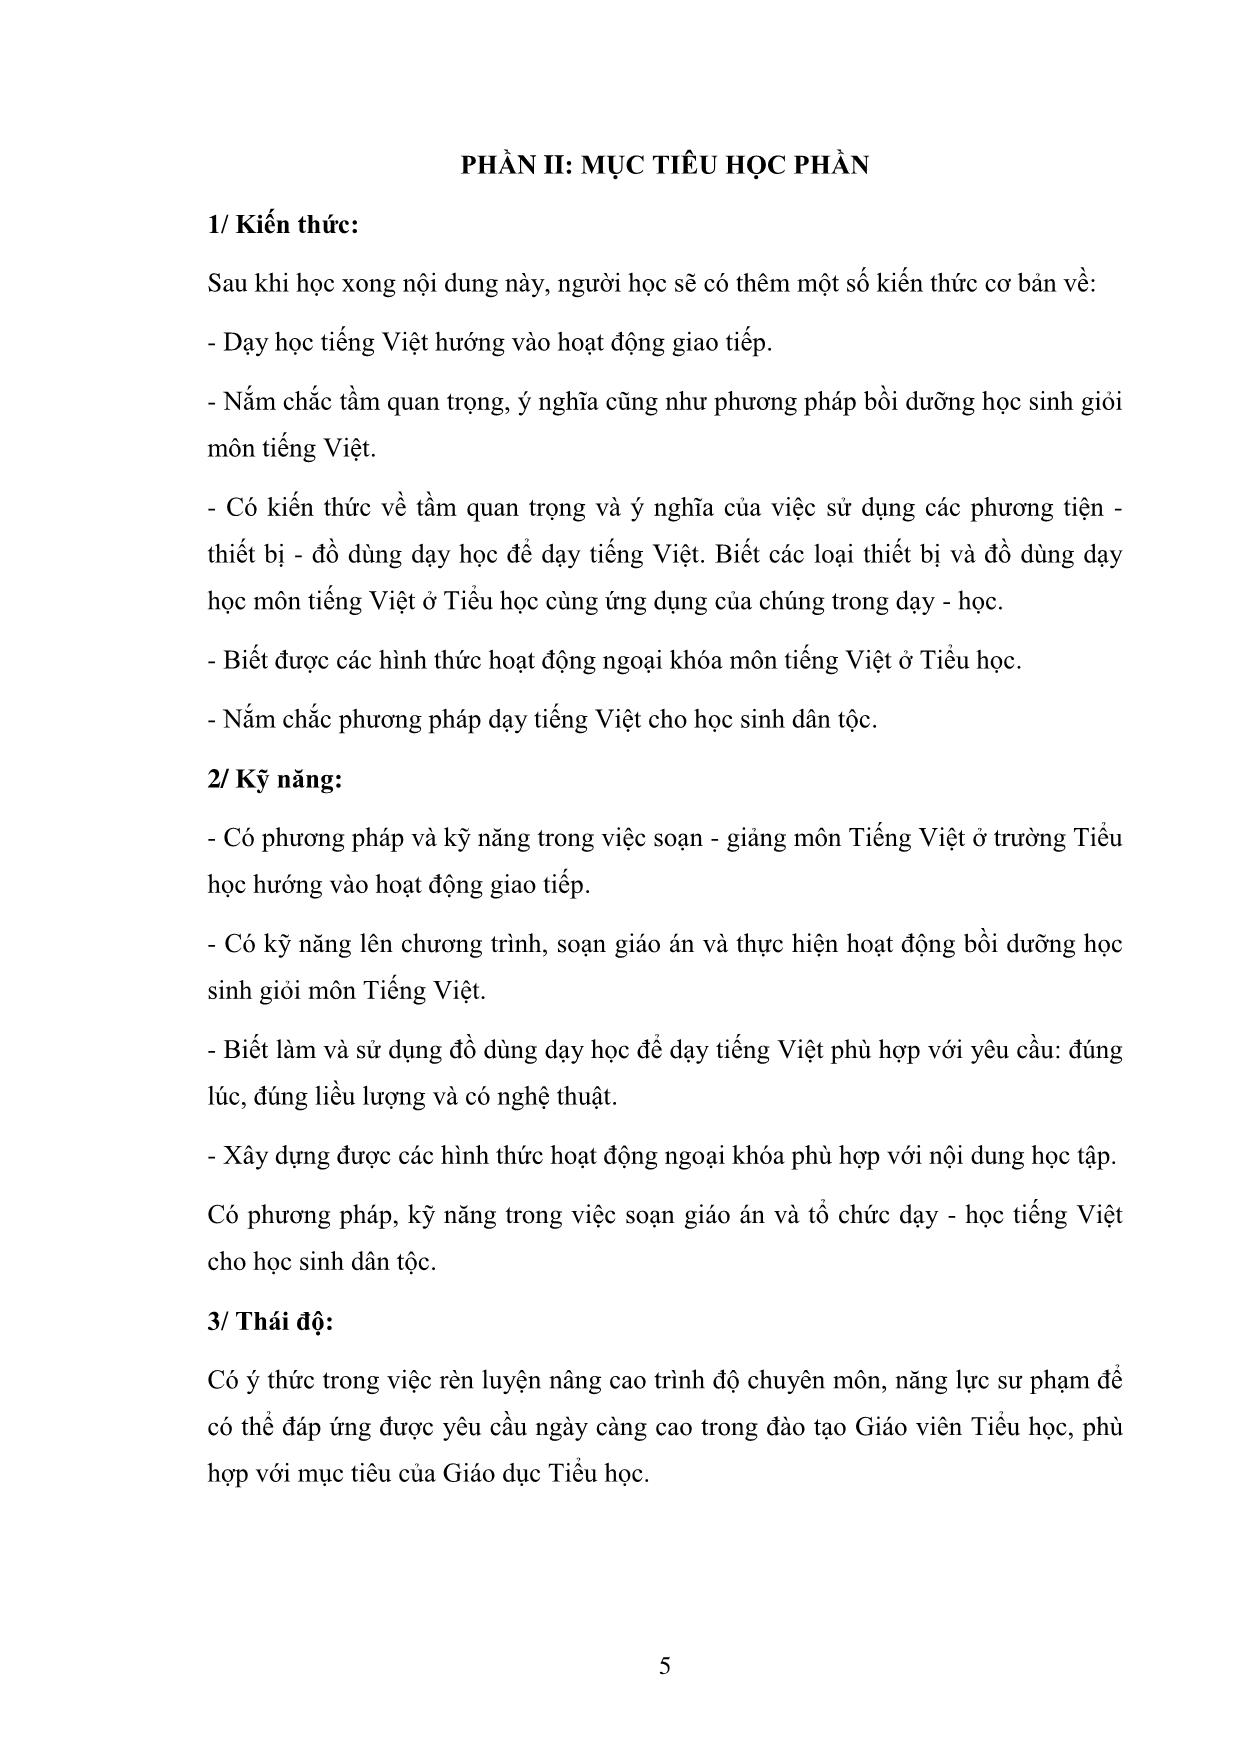 Giáo trình Phương pháp dạy học Tiếng Việt ở Tiểu học (Phần 2) trang 5